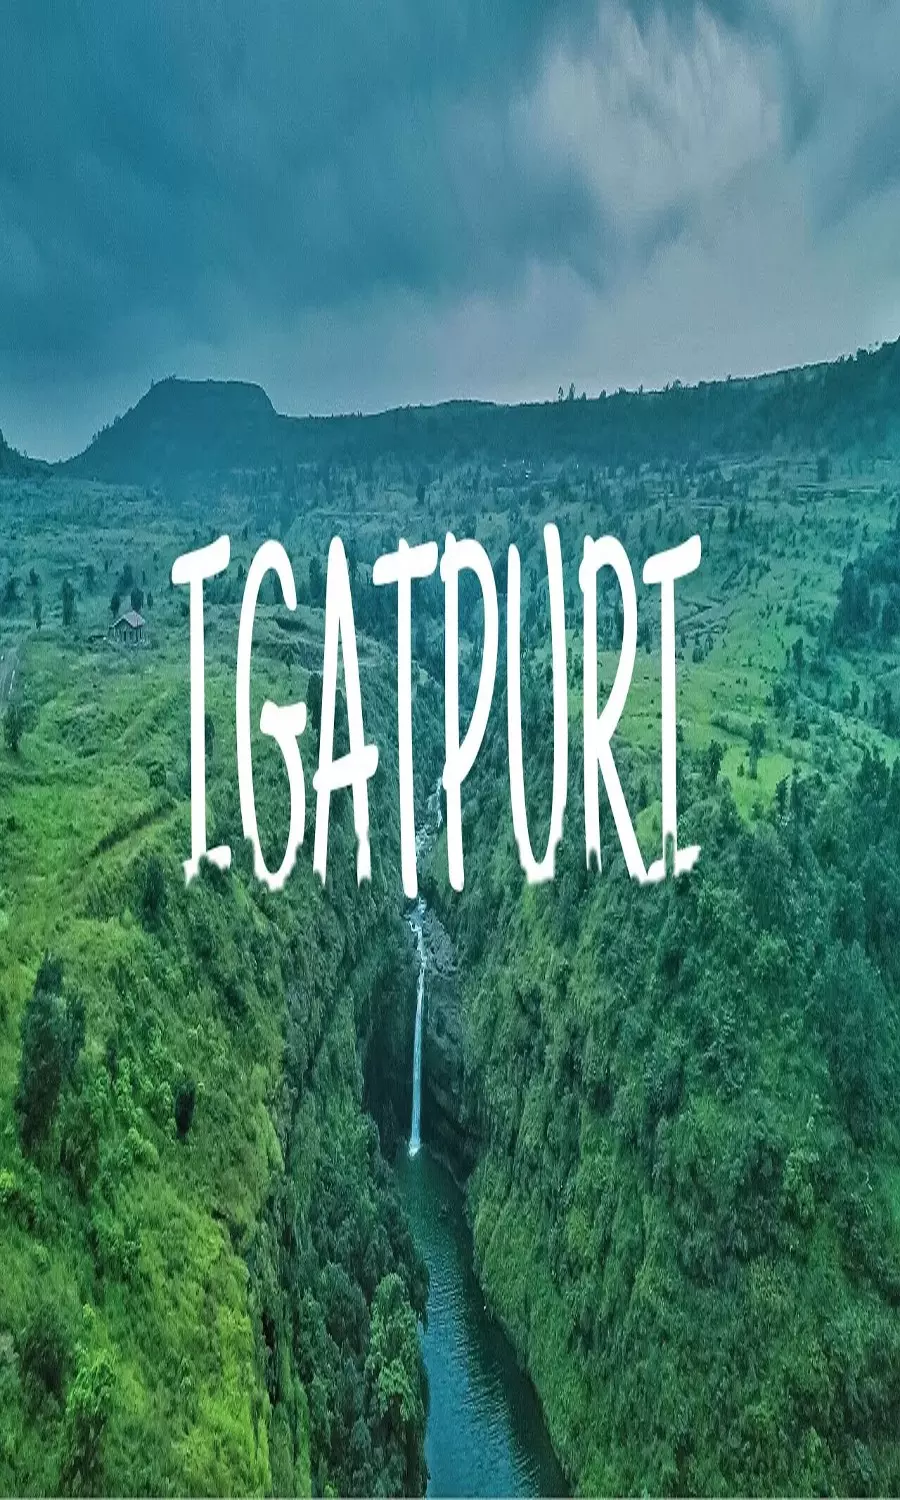 Igatpuri